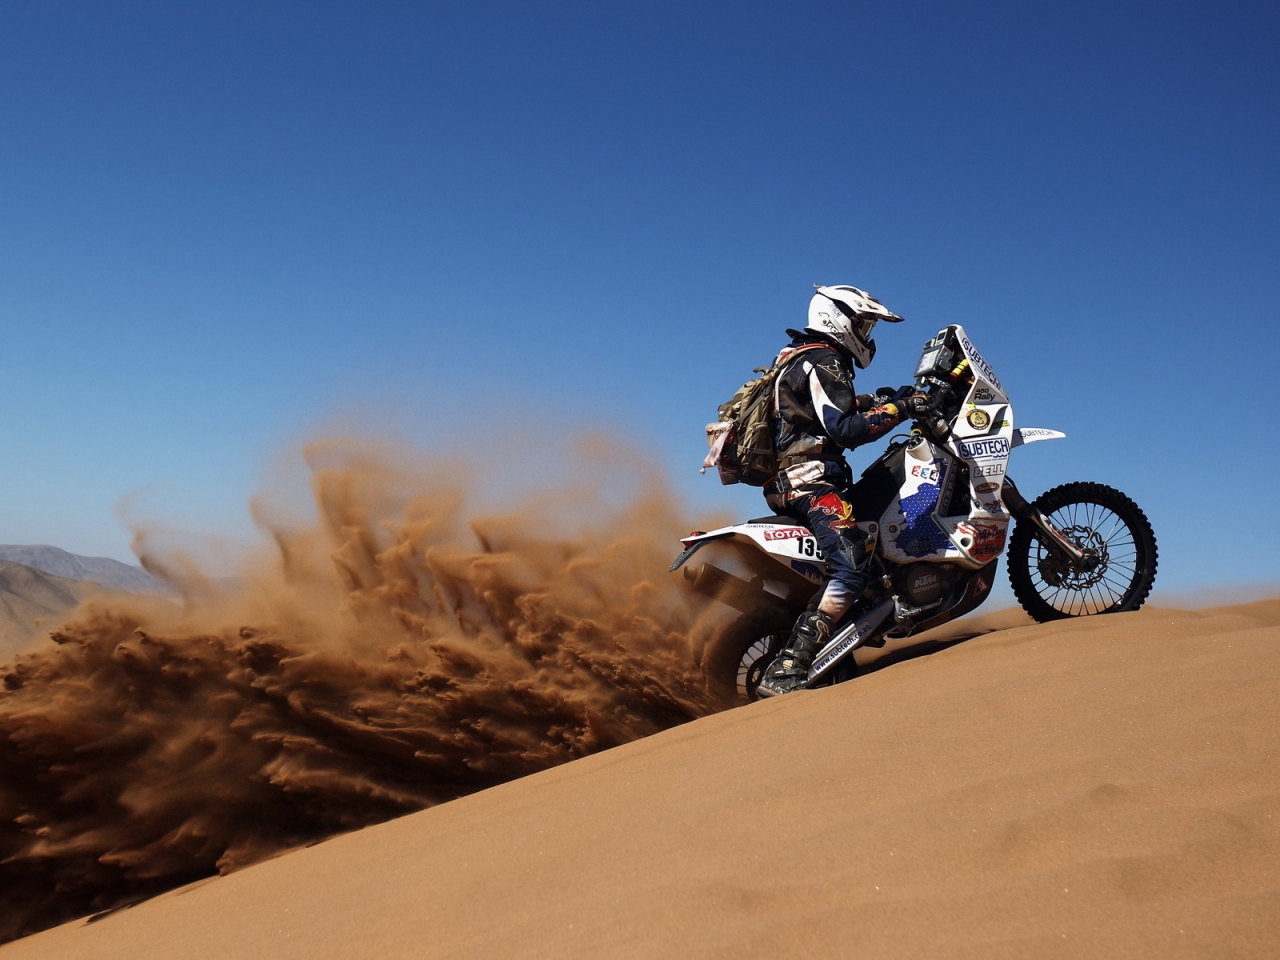 Desert Biker for 1280 x 960 resolution